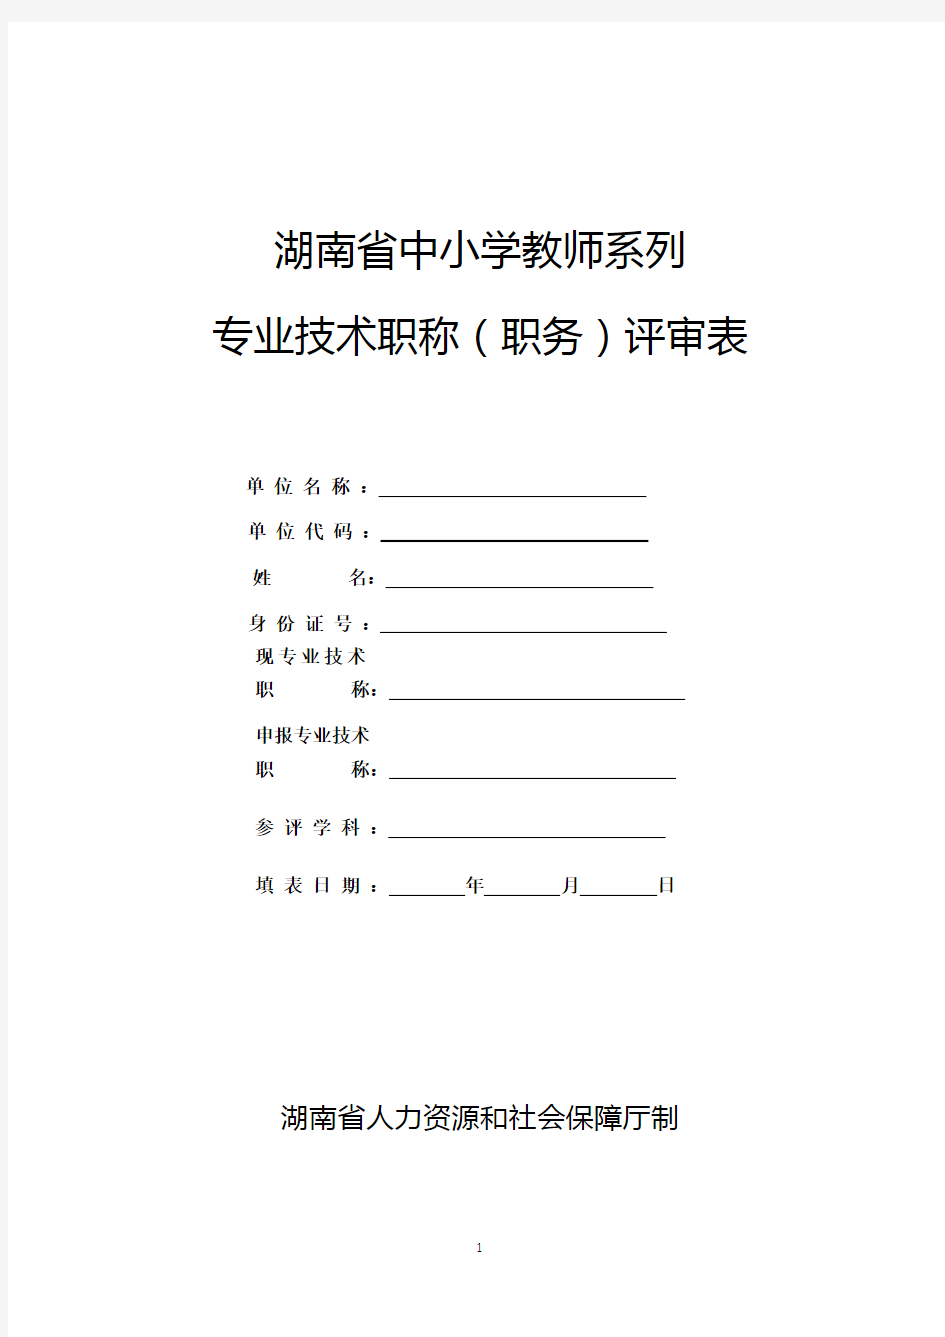 新21张表：湖南省中小学教师系列专业技术职称(职务)评审表